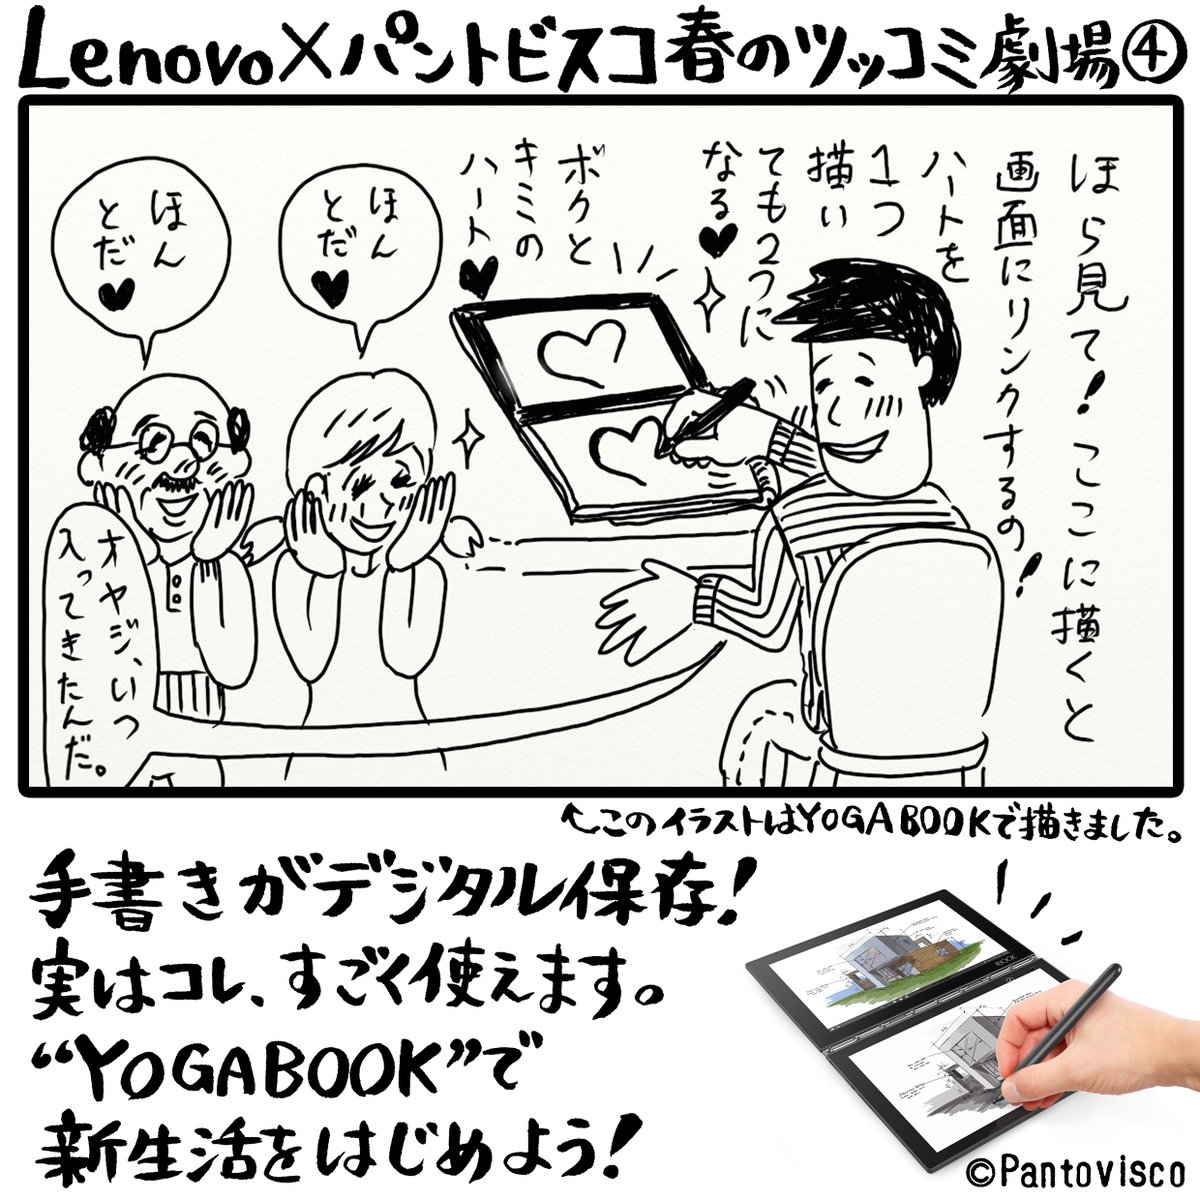 Lenovo Japan Sur Twitter Lenovo パントビスコ 春のツッコミ劇場 その４ オヤジ邪魔するな 一人暮らし 彼氏の家 付き合う ないない Yogabook Yogabookでイラスト描いてみた